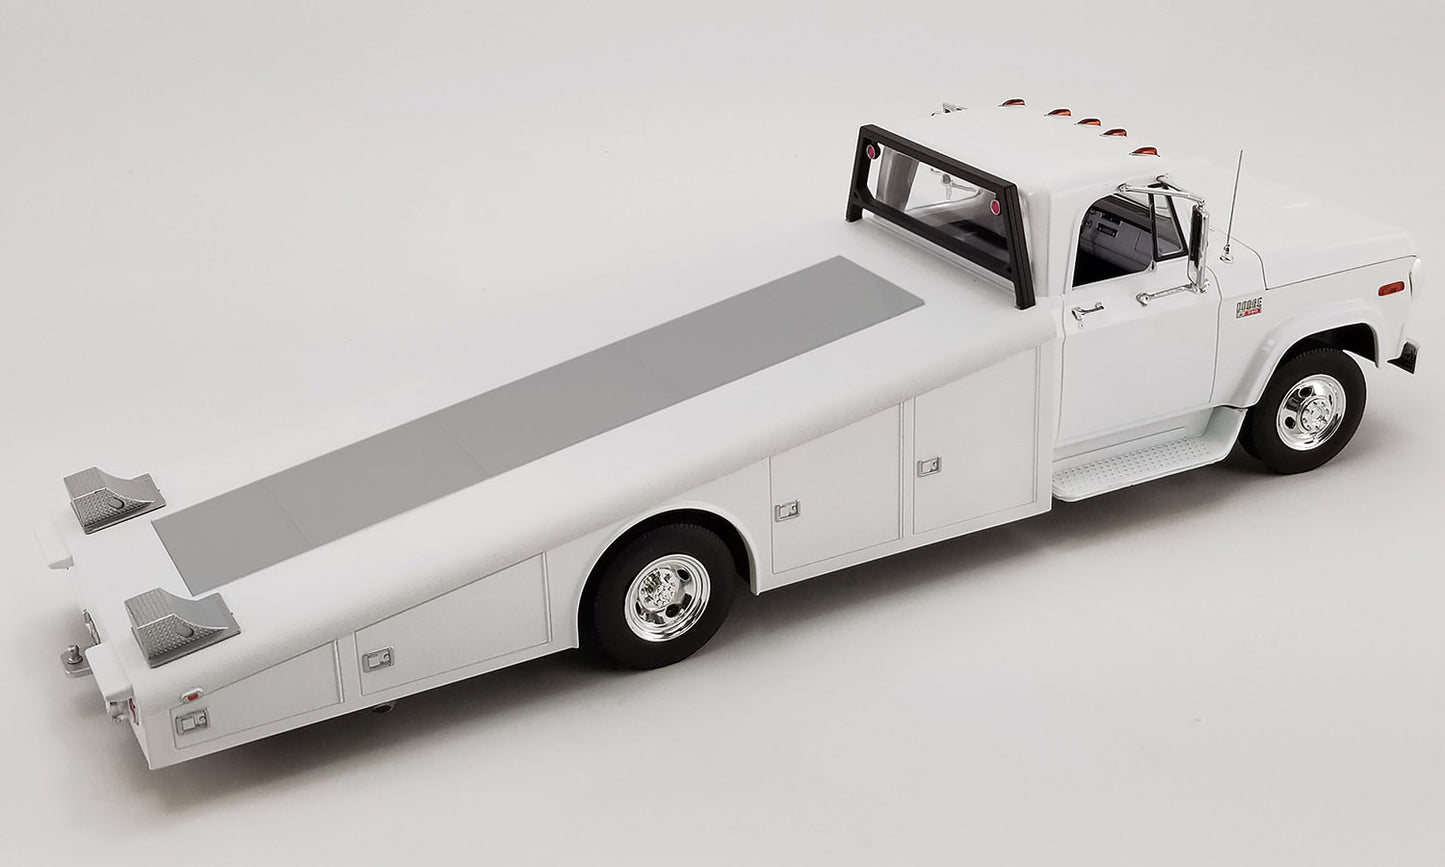 Acme 1970 Dodge D-300 Ramp Truck White 1:18